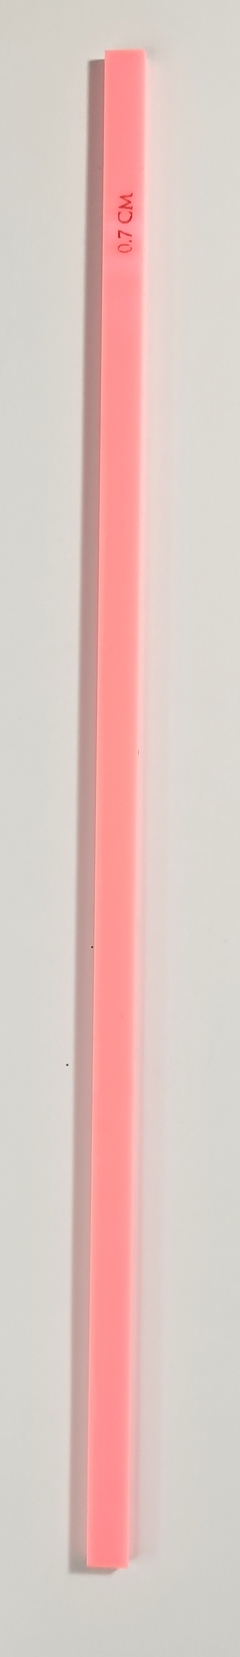 Varilla de Acrílico COLOR 0,7 cm x 25 cm